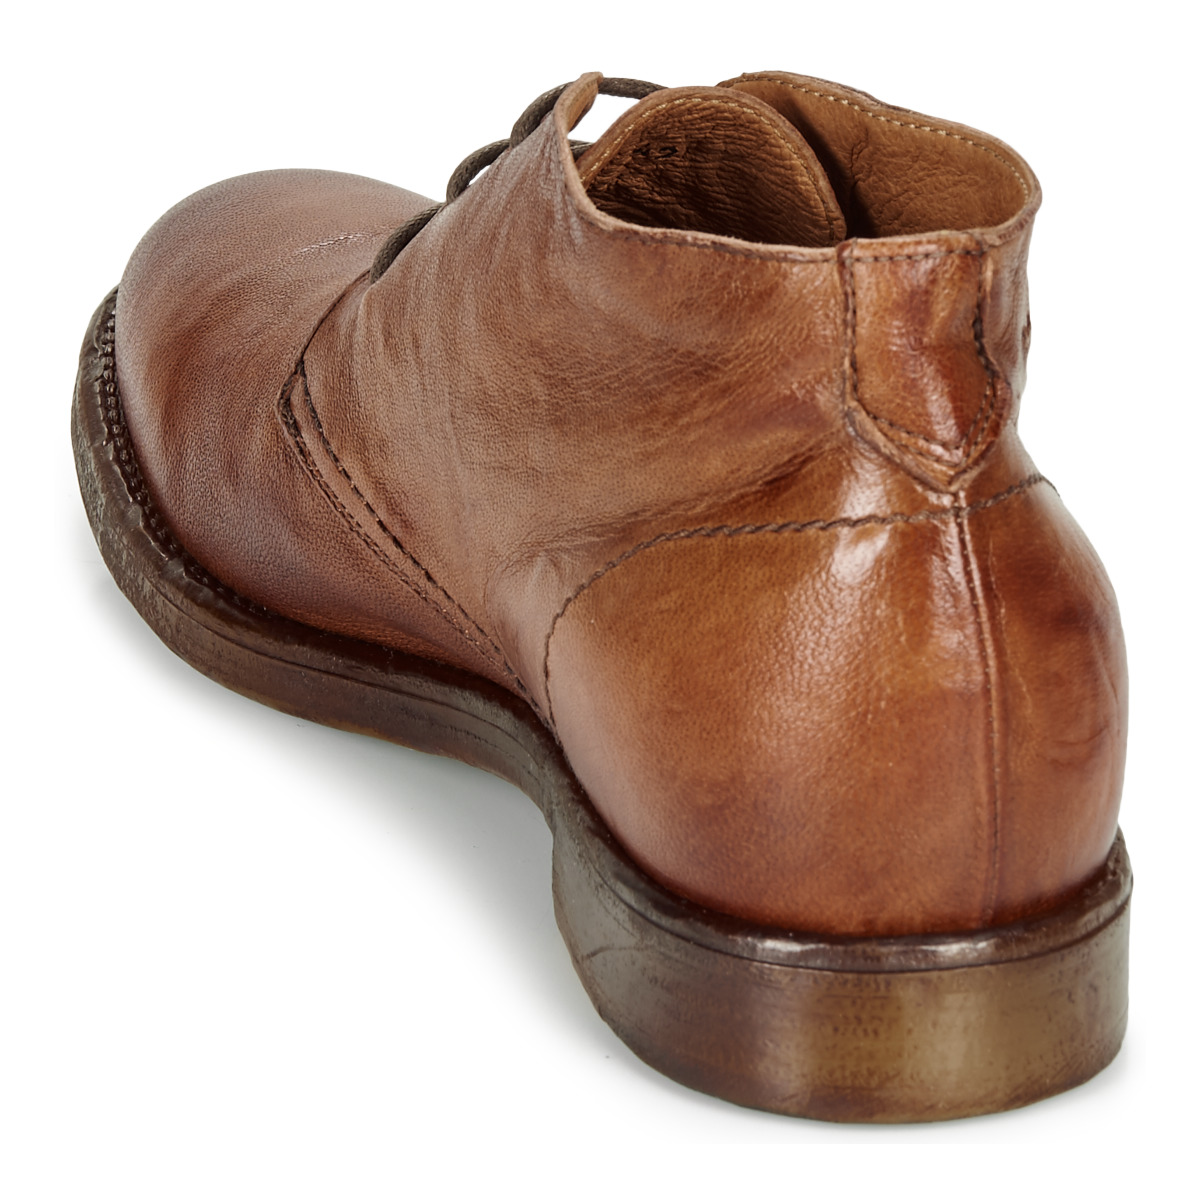 KOST男靴舒适短筒靴工装靴皮靴系带靴子DANDY 17反绒牛皮头层棕色 - 图3